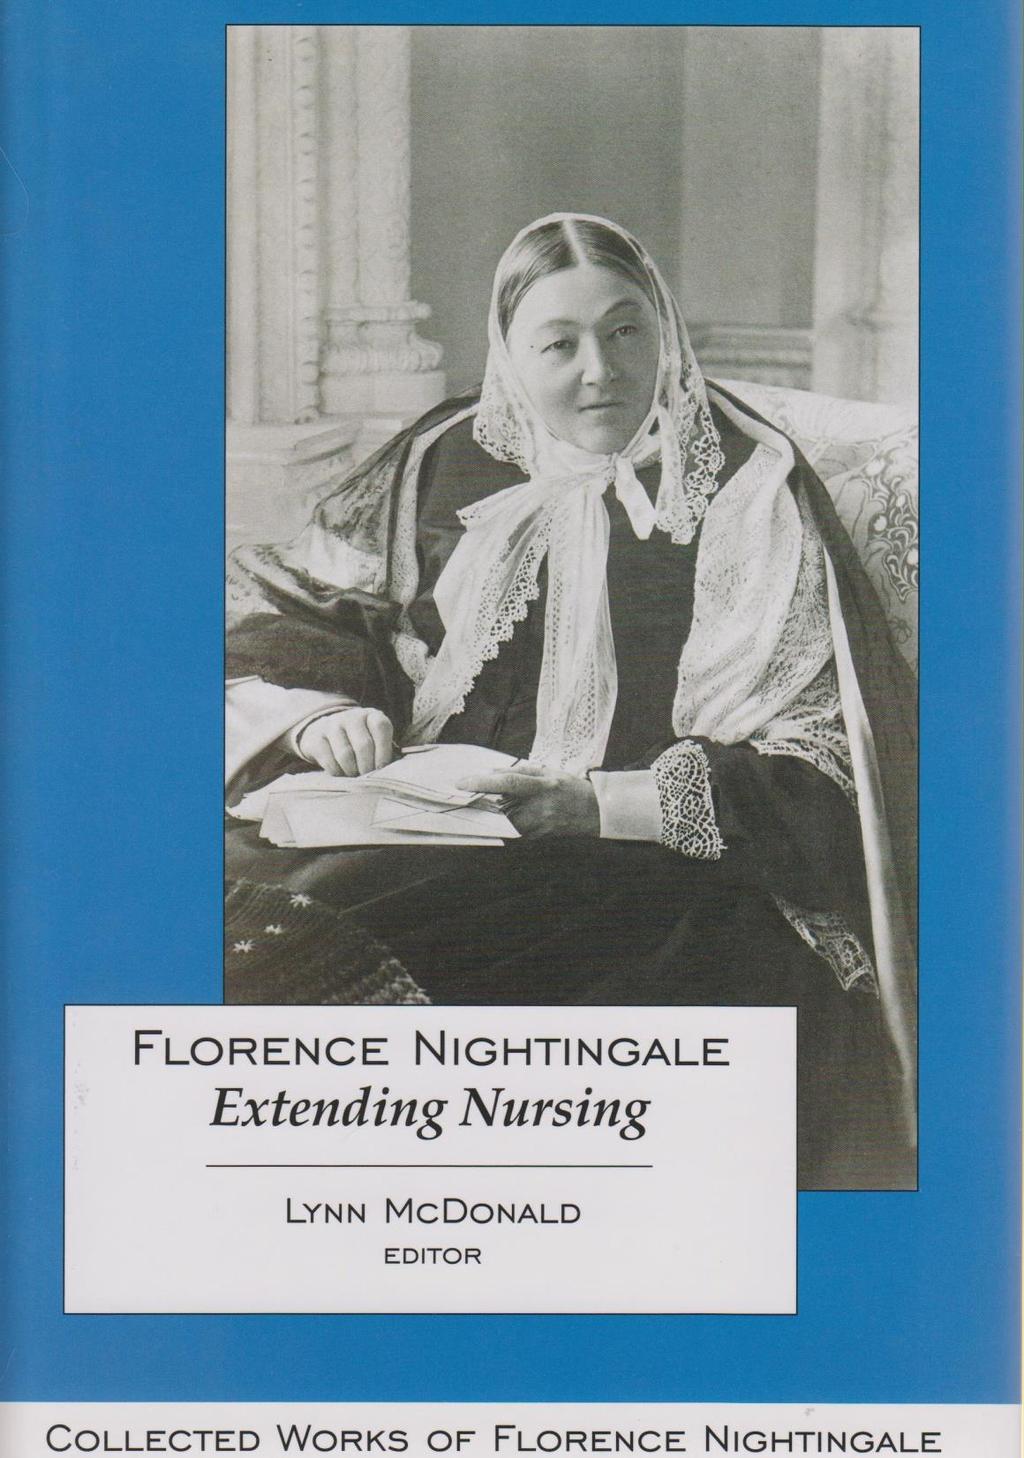 Vol. 13 in CWFN series covers her work mentoring nurses in U.K.